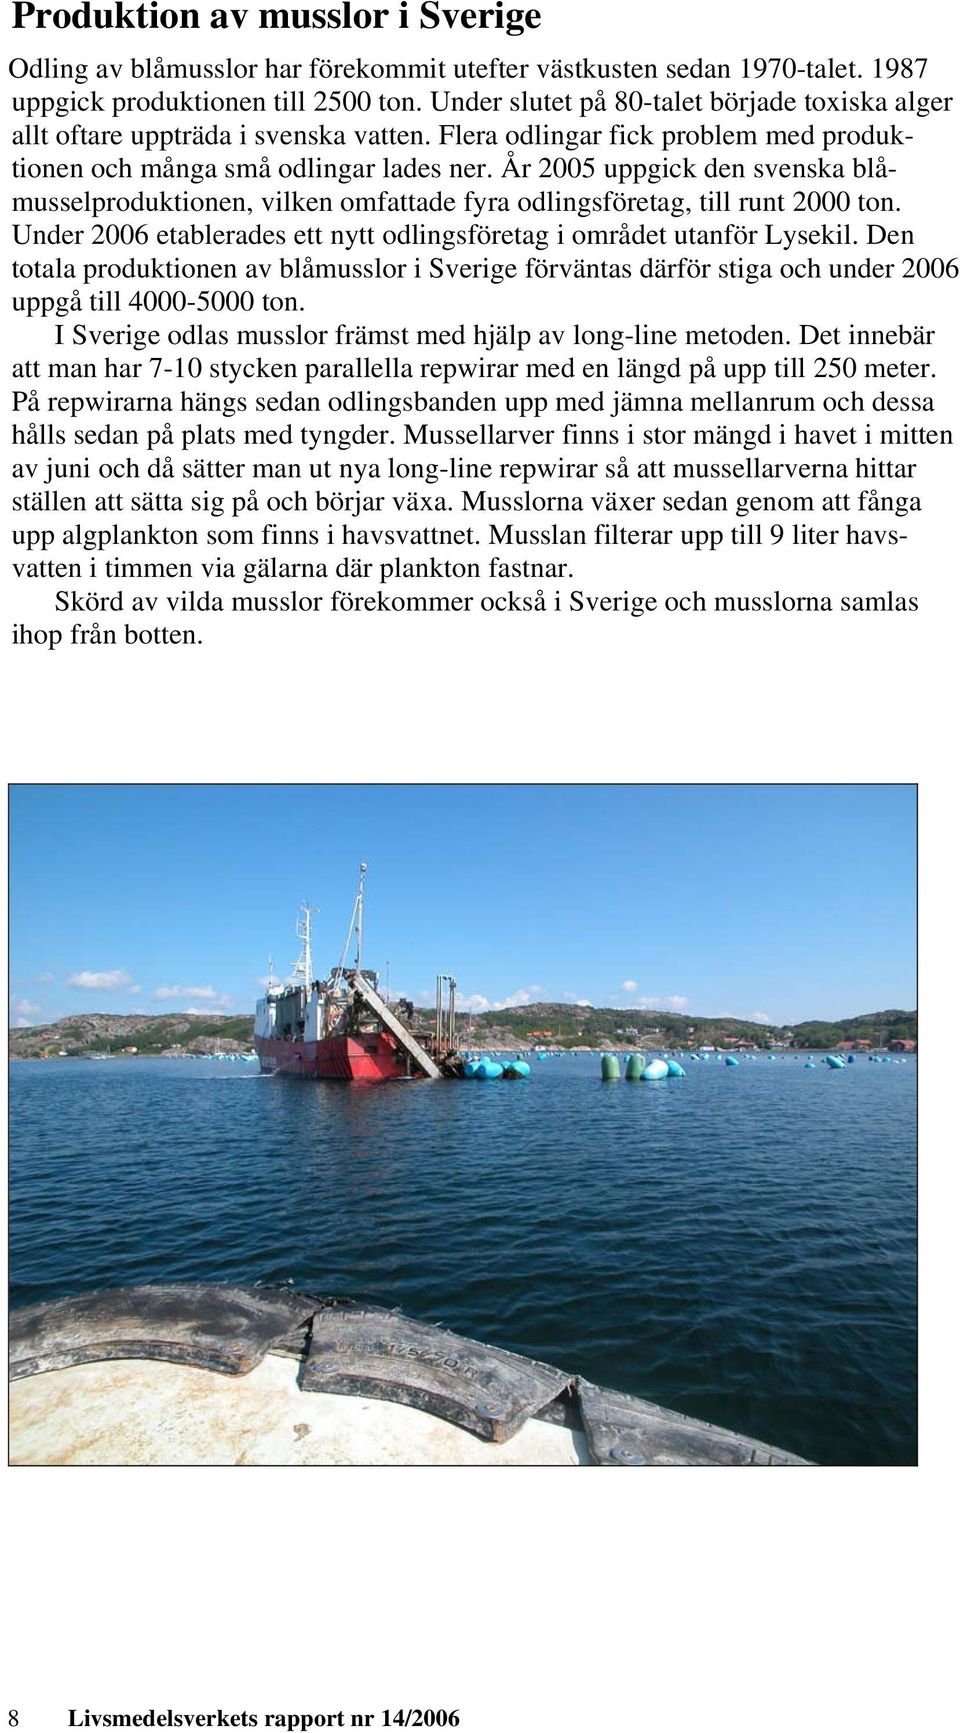 År 2005 uppgick den svenska blåmusselproduktionen, vilken omfattade fyra odlingsföretag, till runt 2000 ton. Under 2006 etablerades ett nytt odlingsföretag i området utanför Lysekil.